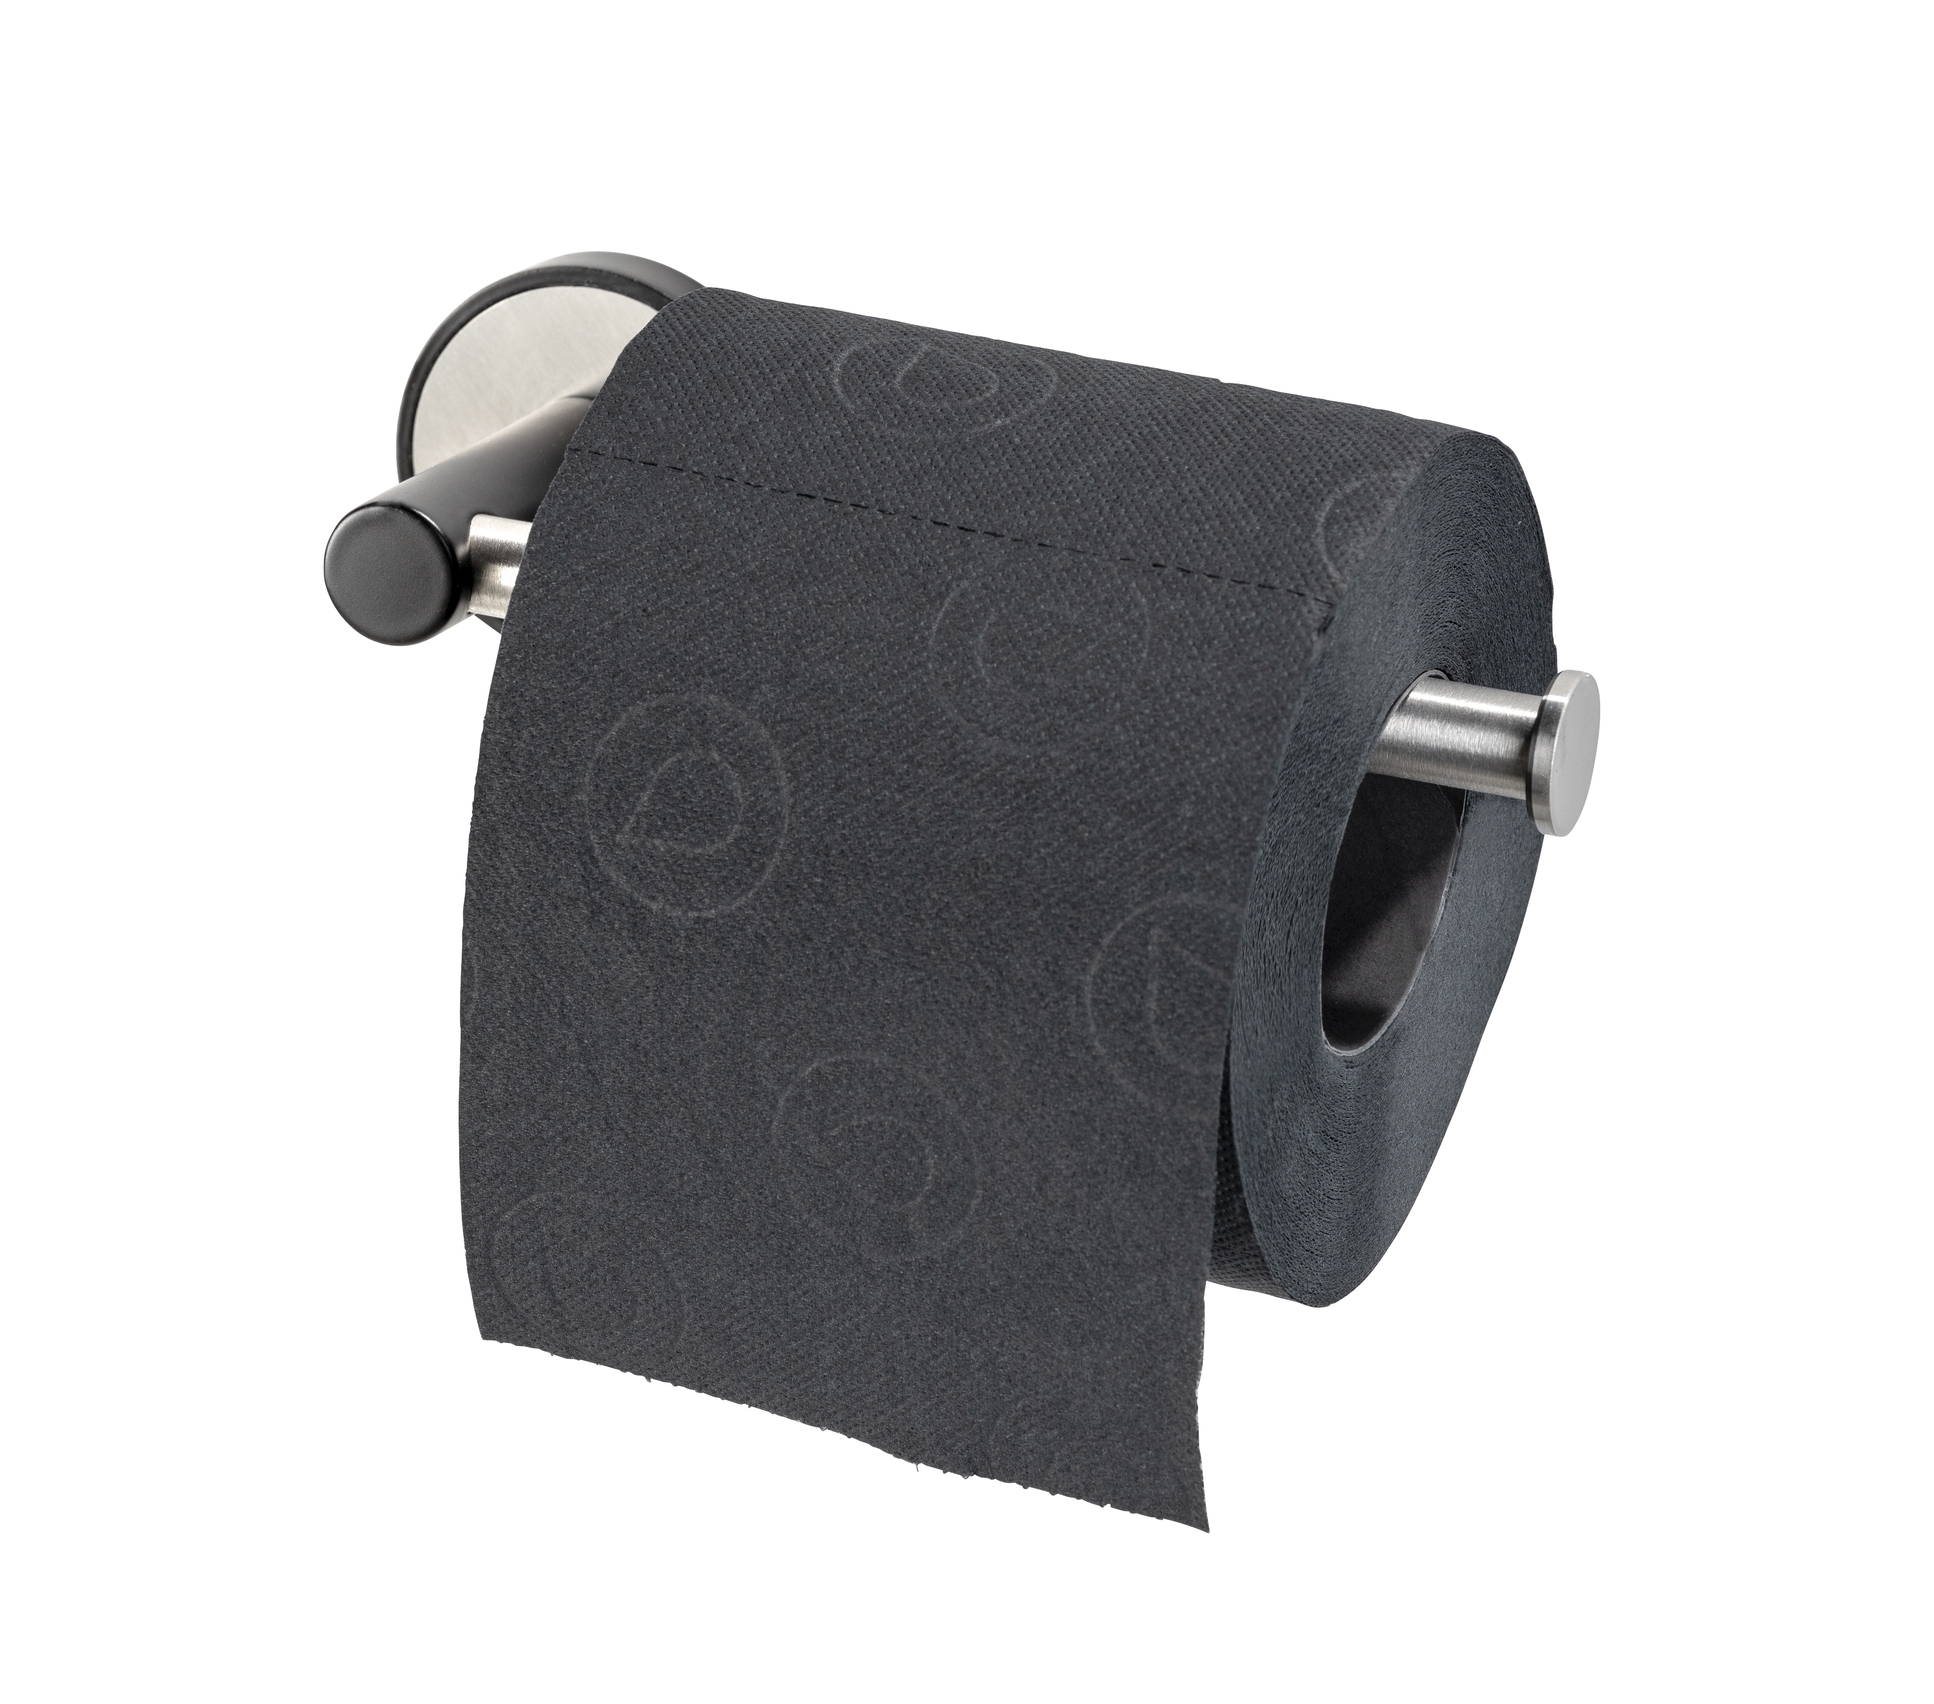 Wenko UV-Loc® Toilettenpapierhalter Udine 17 x 5 x 6 cm, ohne Deckel,  silber matt/schwarz. Befestigen ohne bohren | 422601